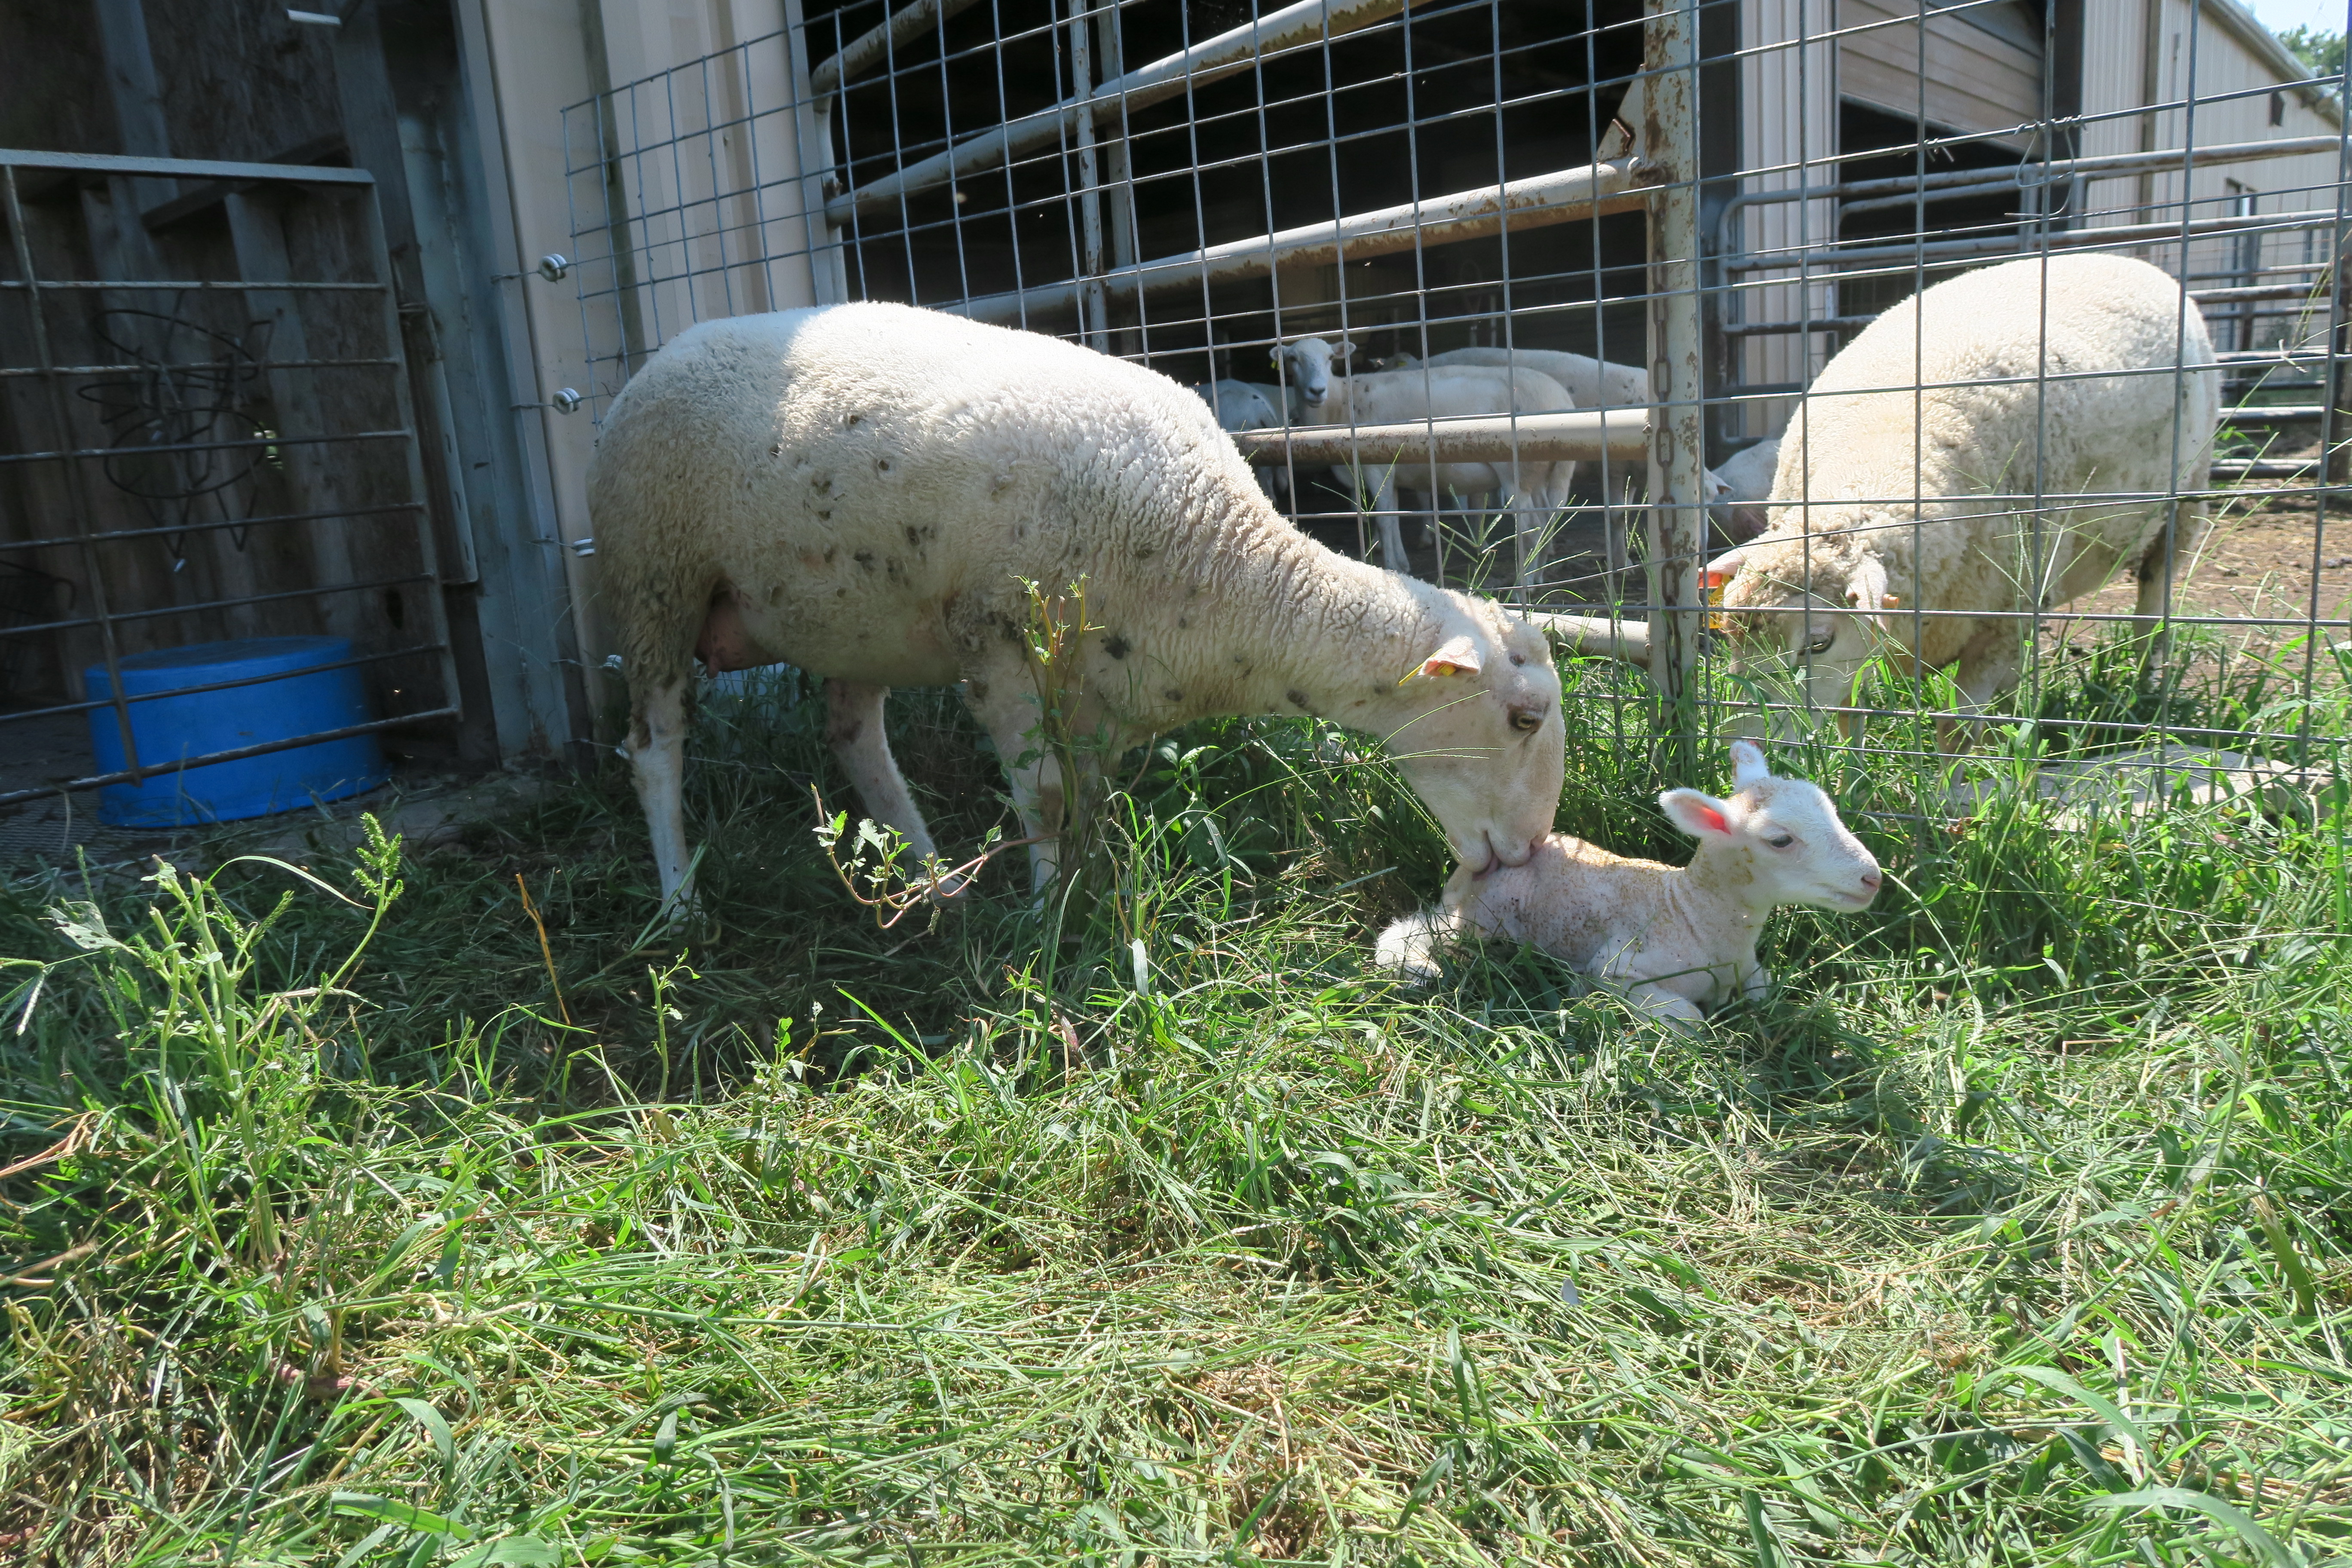 Lambs in pen